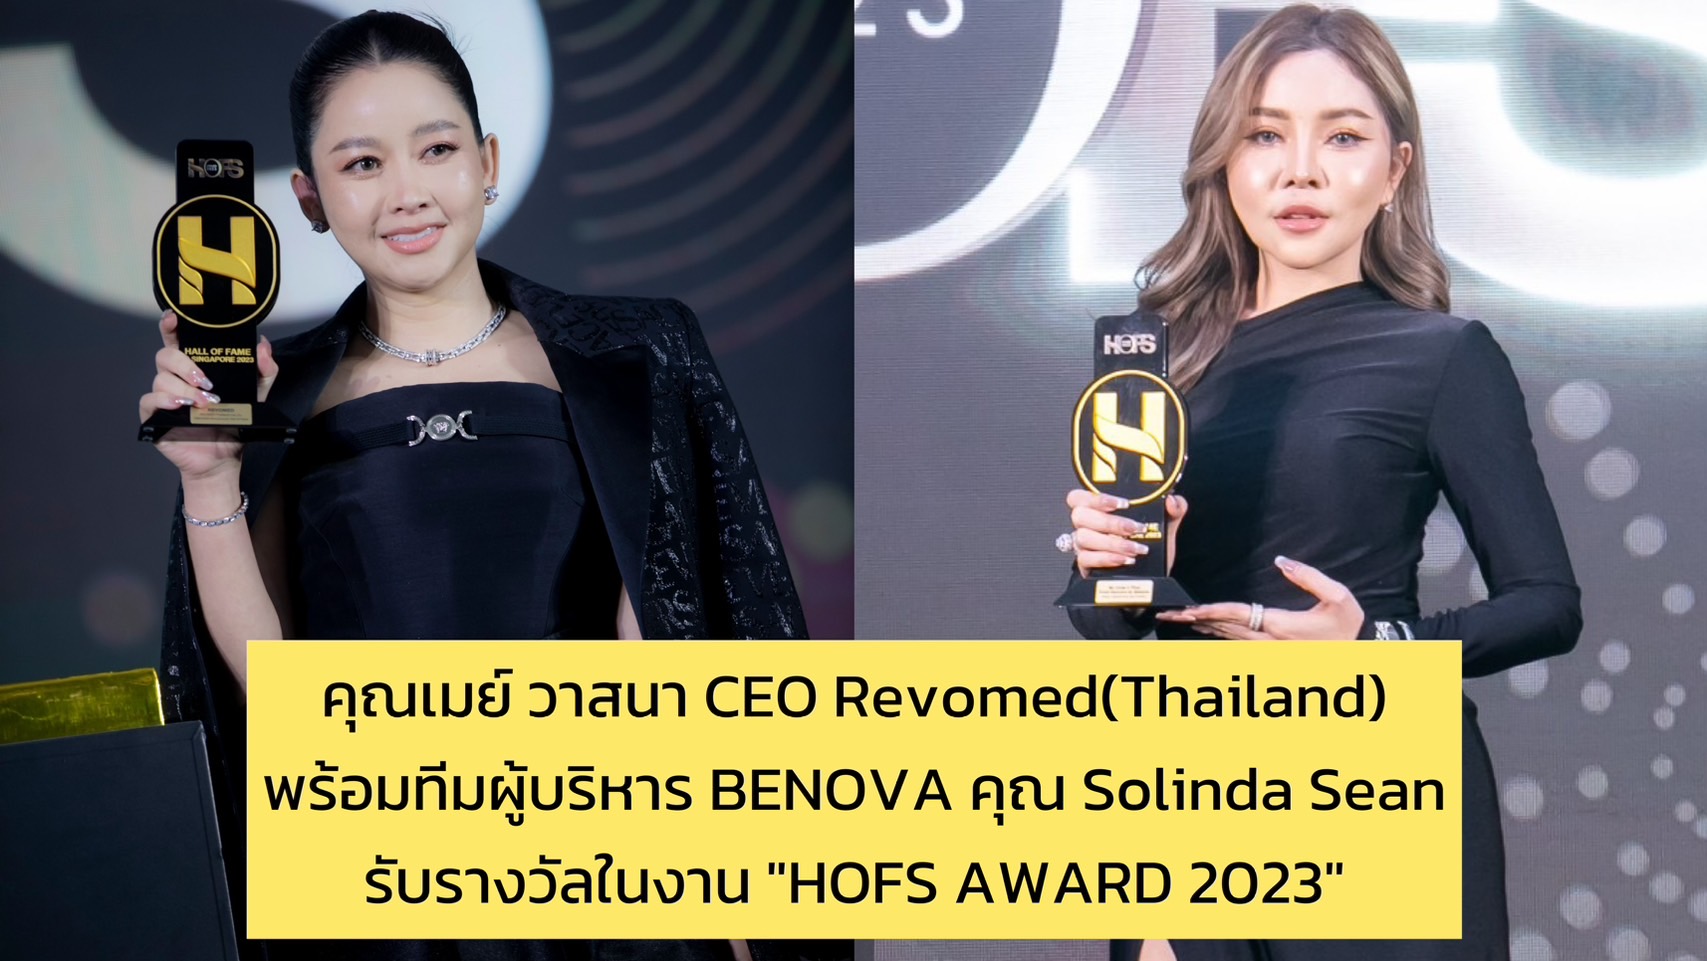 คุณเมย์ วาสนา CEO Revomed (Thailand) พร้อมทีมผู้บริหาร BENOVA คุณ Solinda Sean รับรางวัลในงาน “HOFS AWARD 2023”